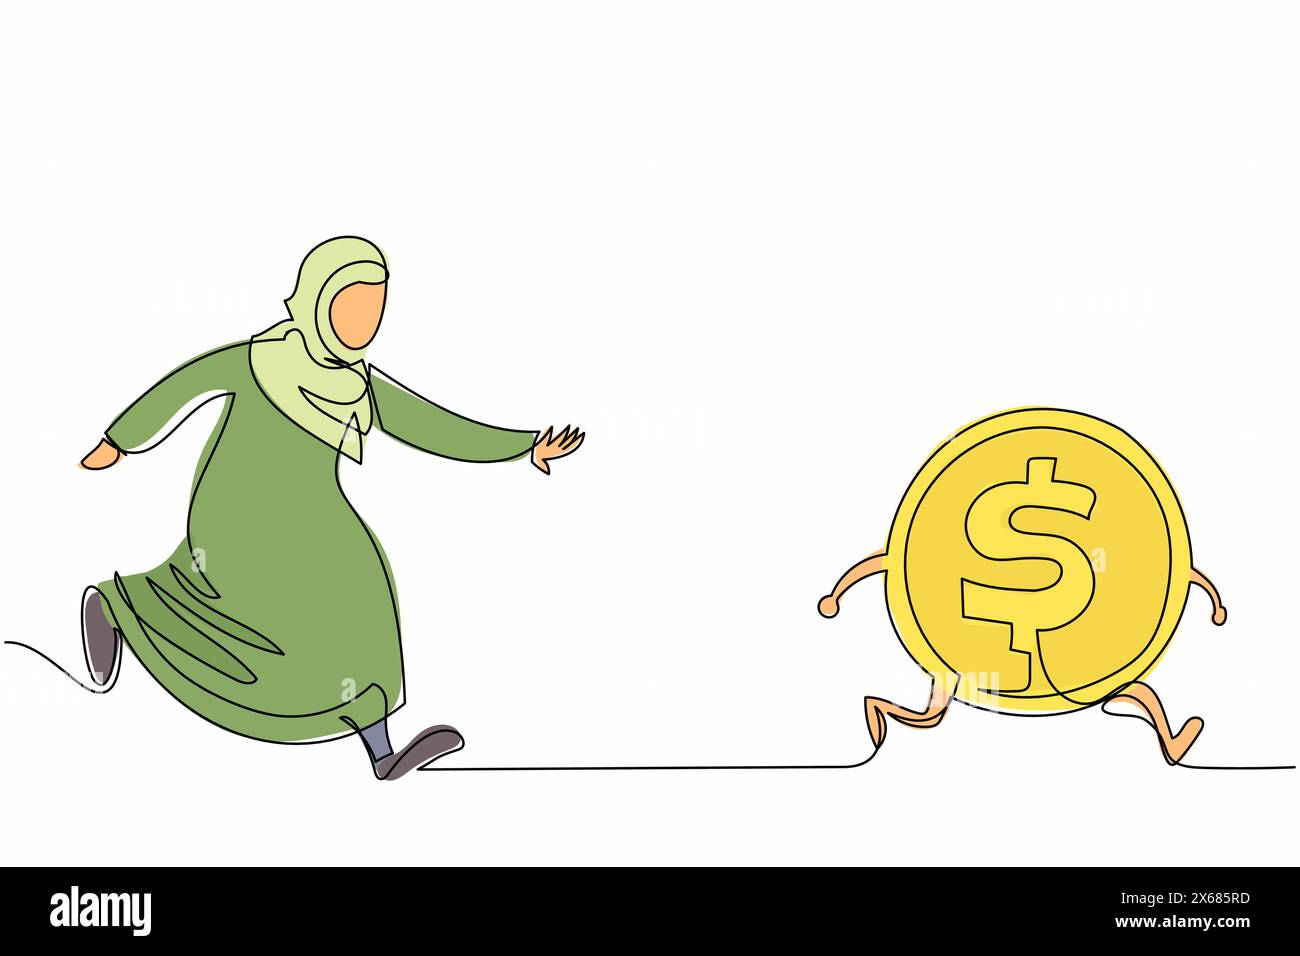 Durchgehende eine Linie, die arabische Geschäftsfrau auf der Jagd nach Dollarmünze zieht. Büroangestellte wollen so viel Geld wie möglich bekommen. Arabischer Manager verfolgt Erfolg. S Stock Vektor